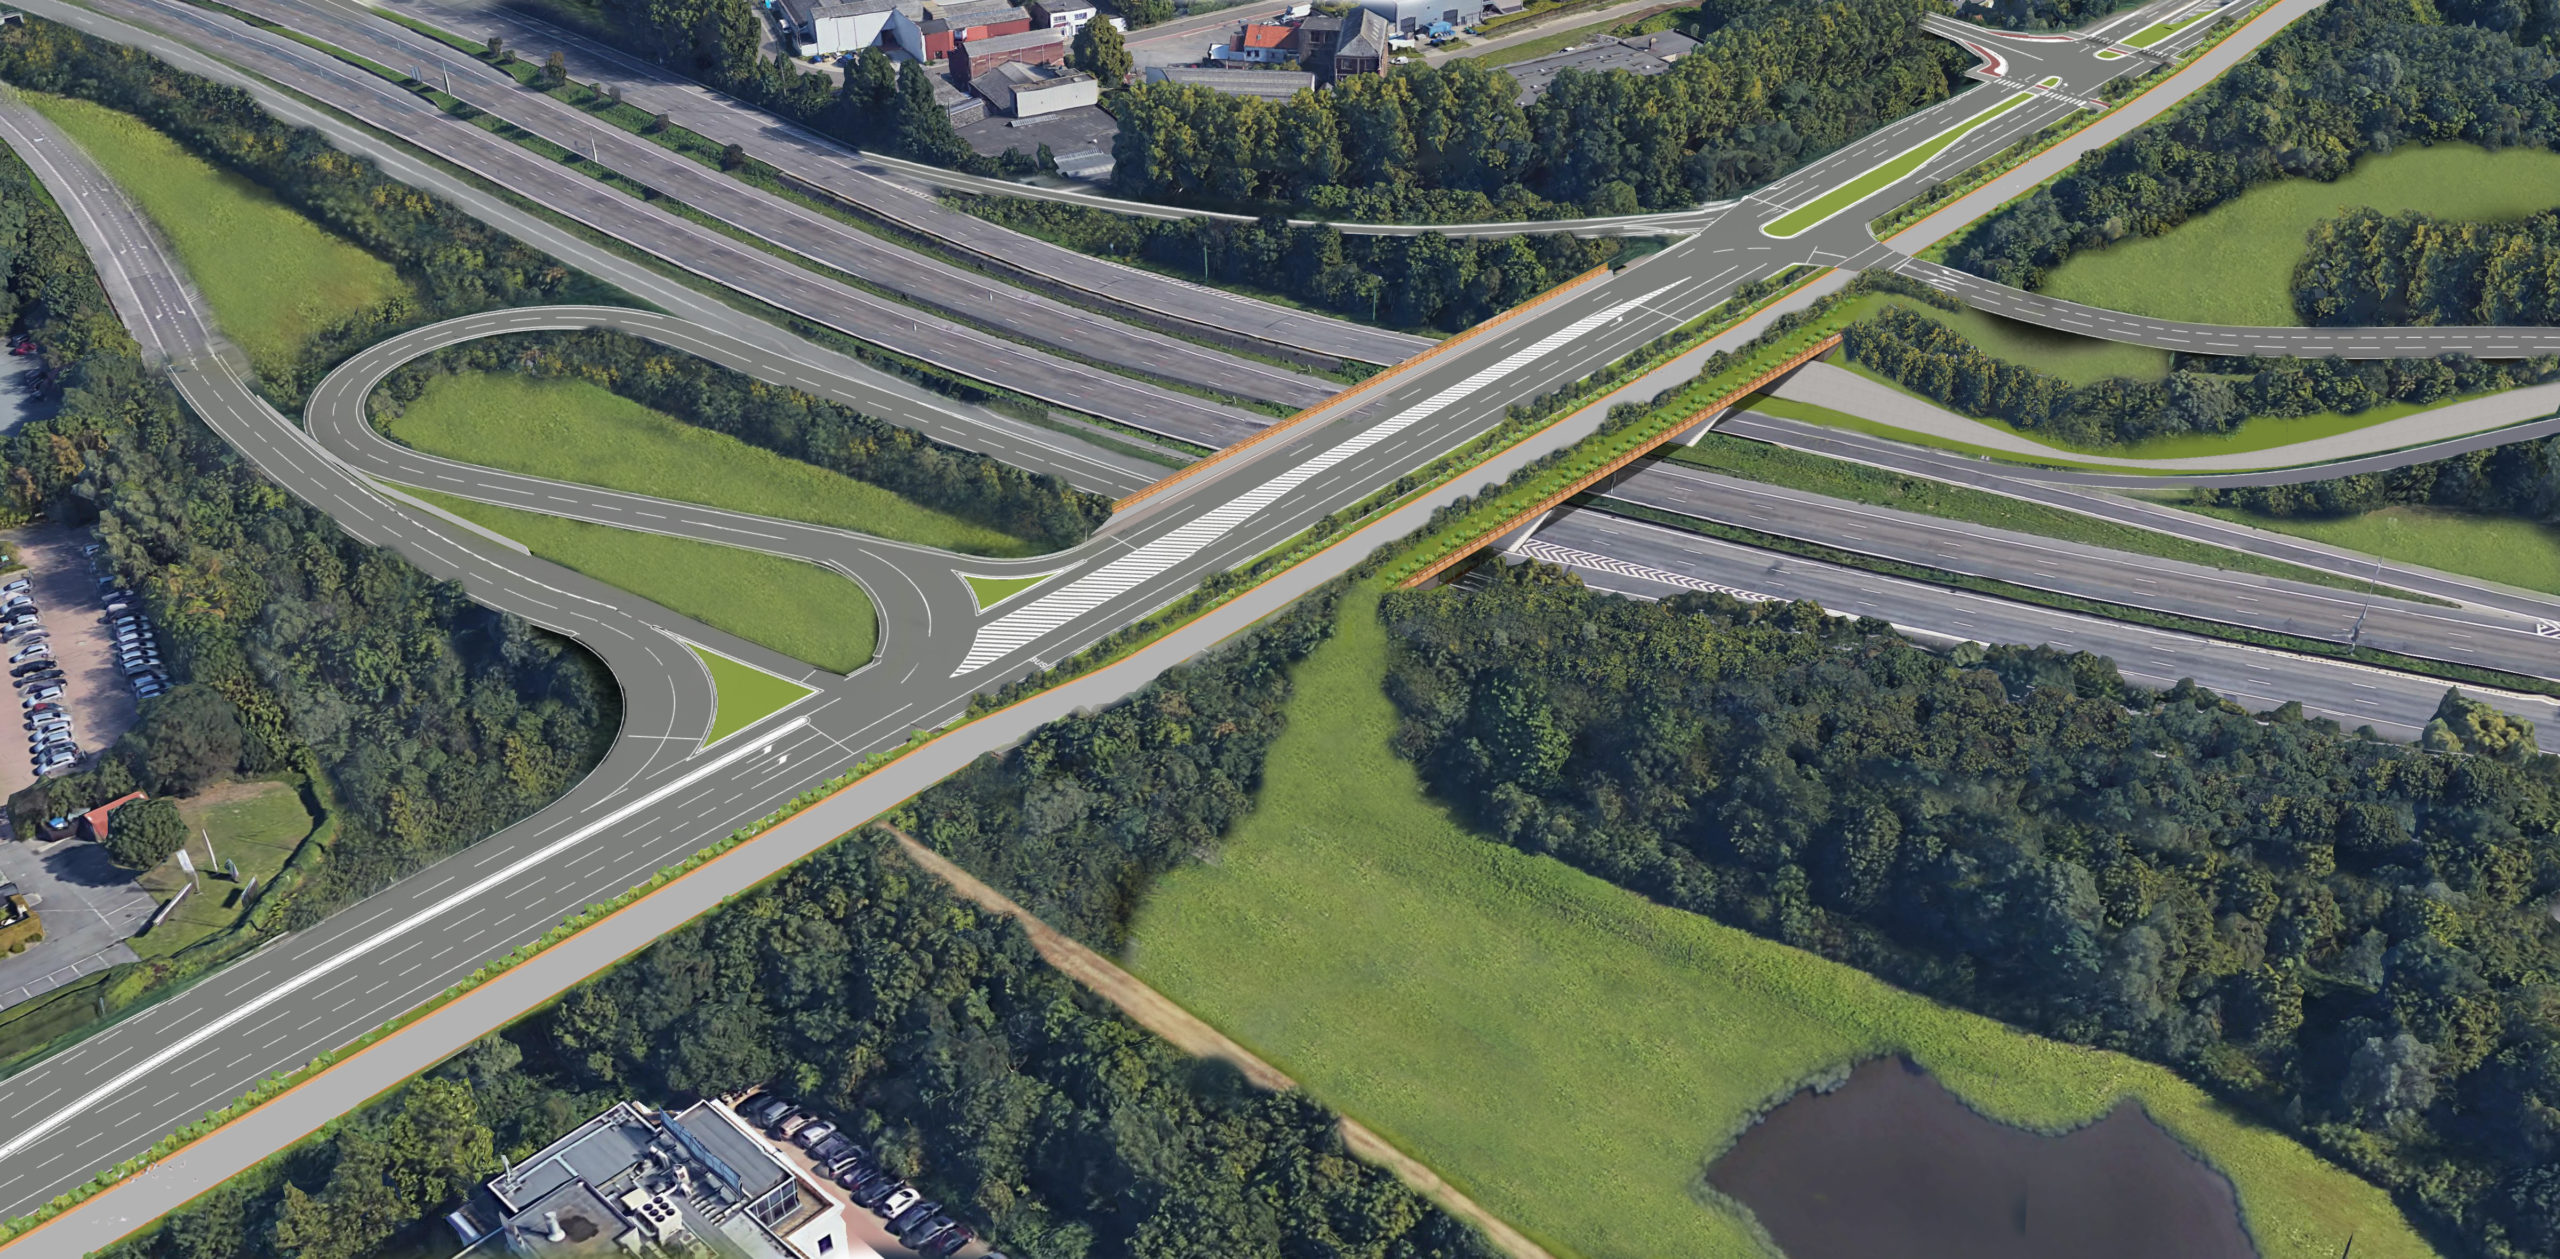 Work starts on new Hector Henneau bridge in Zaventem